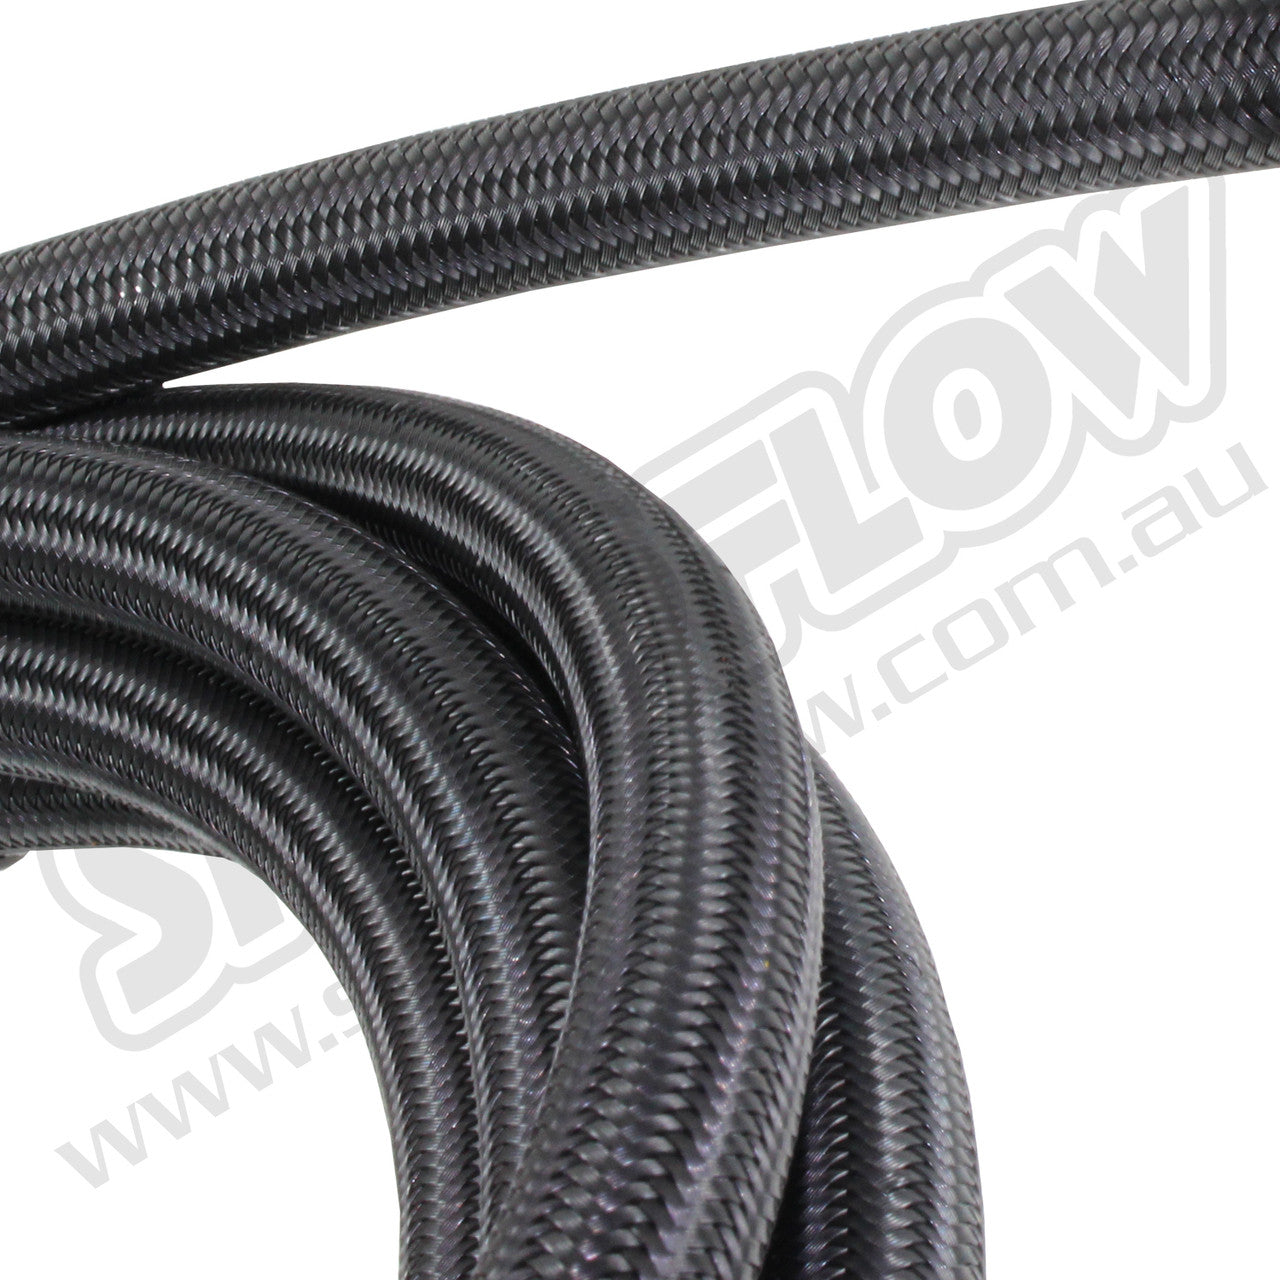 Speedflow 5M -06AN 200 Series Braided Hose - Black Stainless Steel